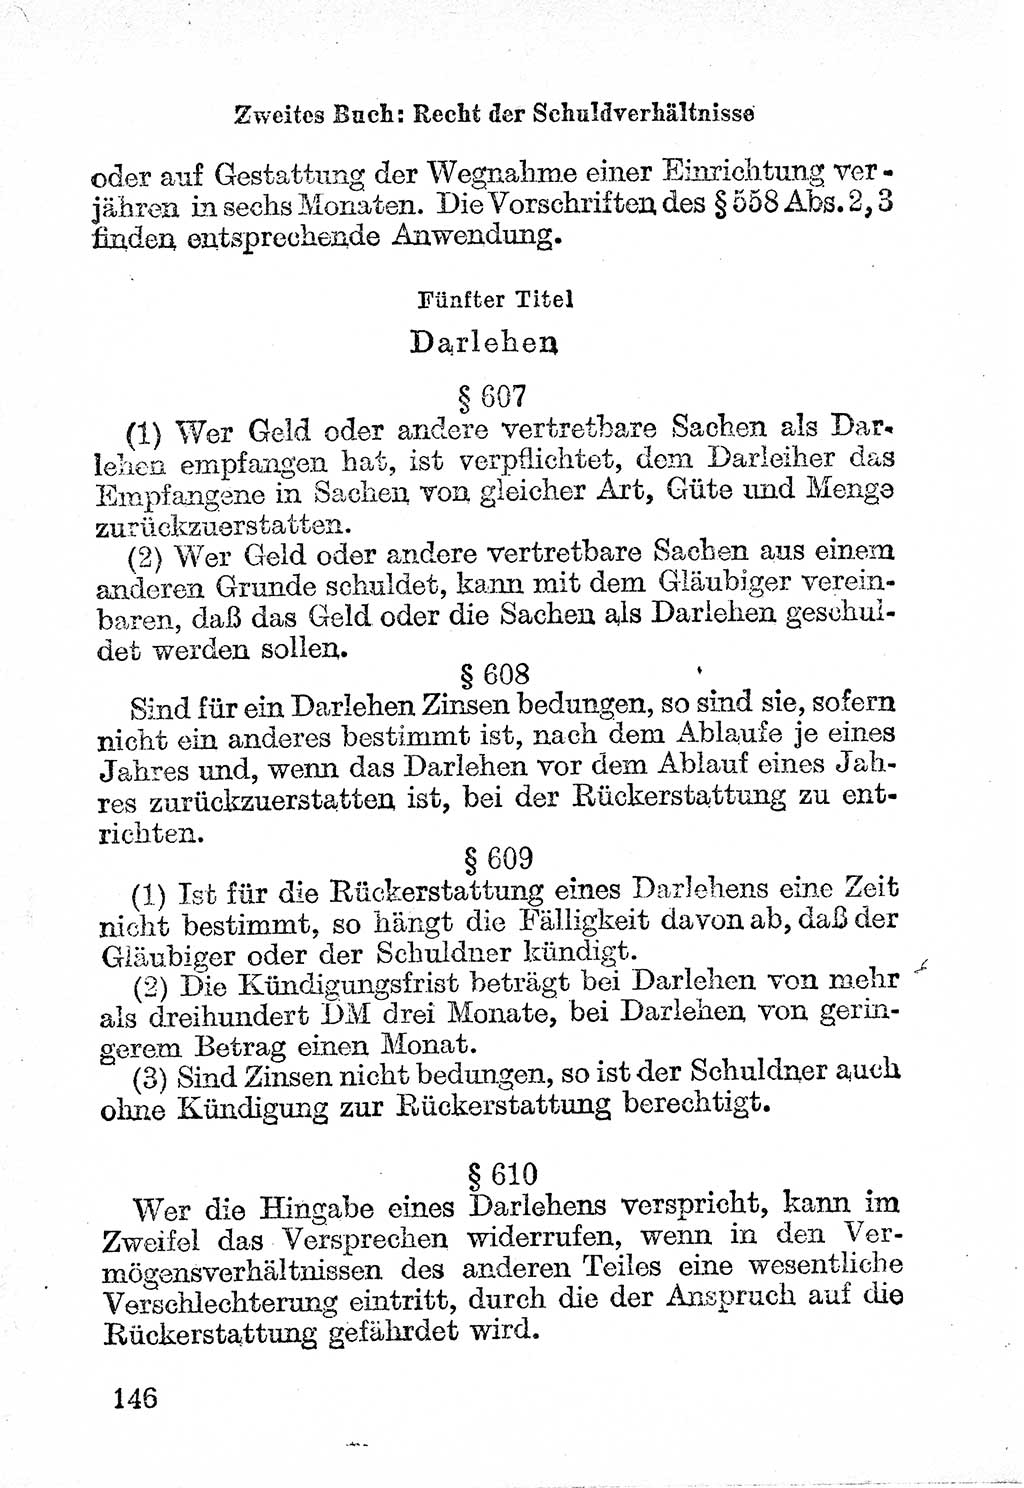 Bürgerliches Gesetzbuch (BGB) nebst wichtigen Nebengesetzen [Deutsche Demokratische Republik (DDR)] 1956, Seite 146 (BGB Nebenges. DDR 1956, S. 146)